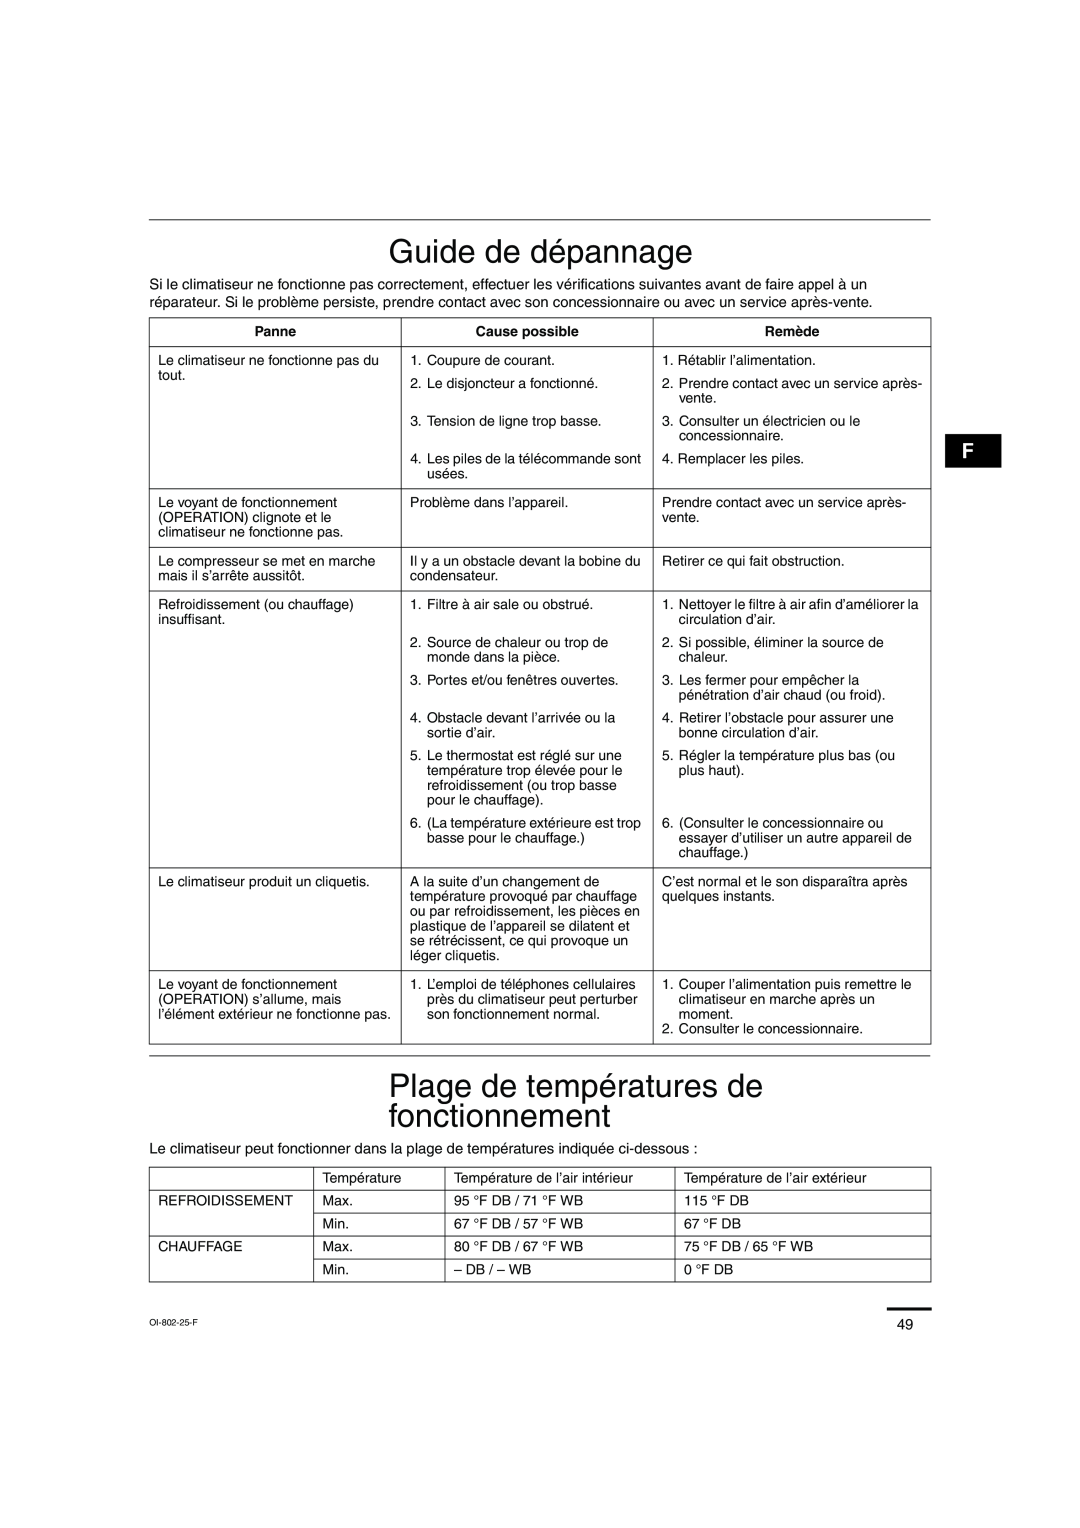 Sanyo KHS0971, KHS1271 Guide de dépannage, Plage de températures de fonctionnement, Panne, Cause possible, Remède 